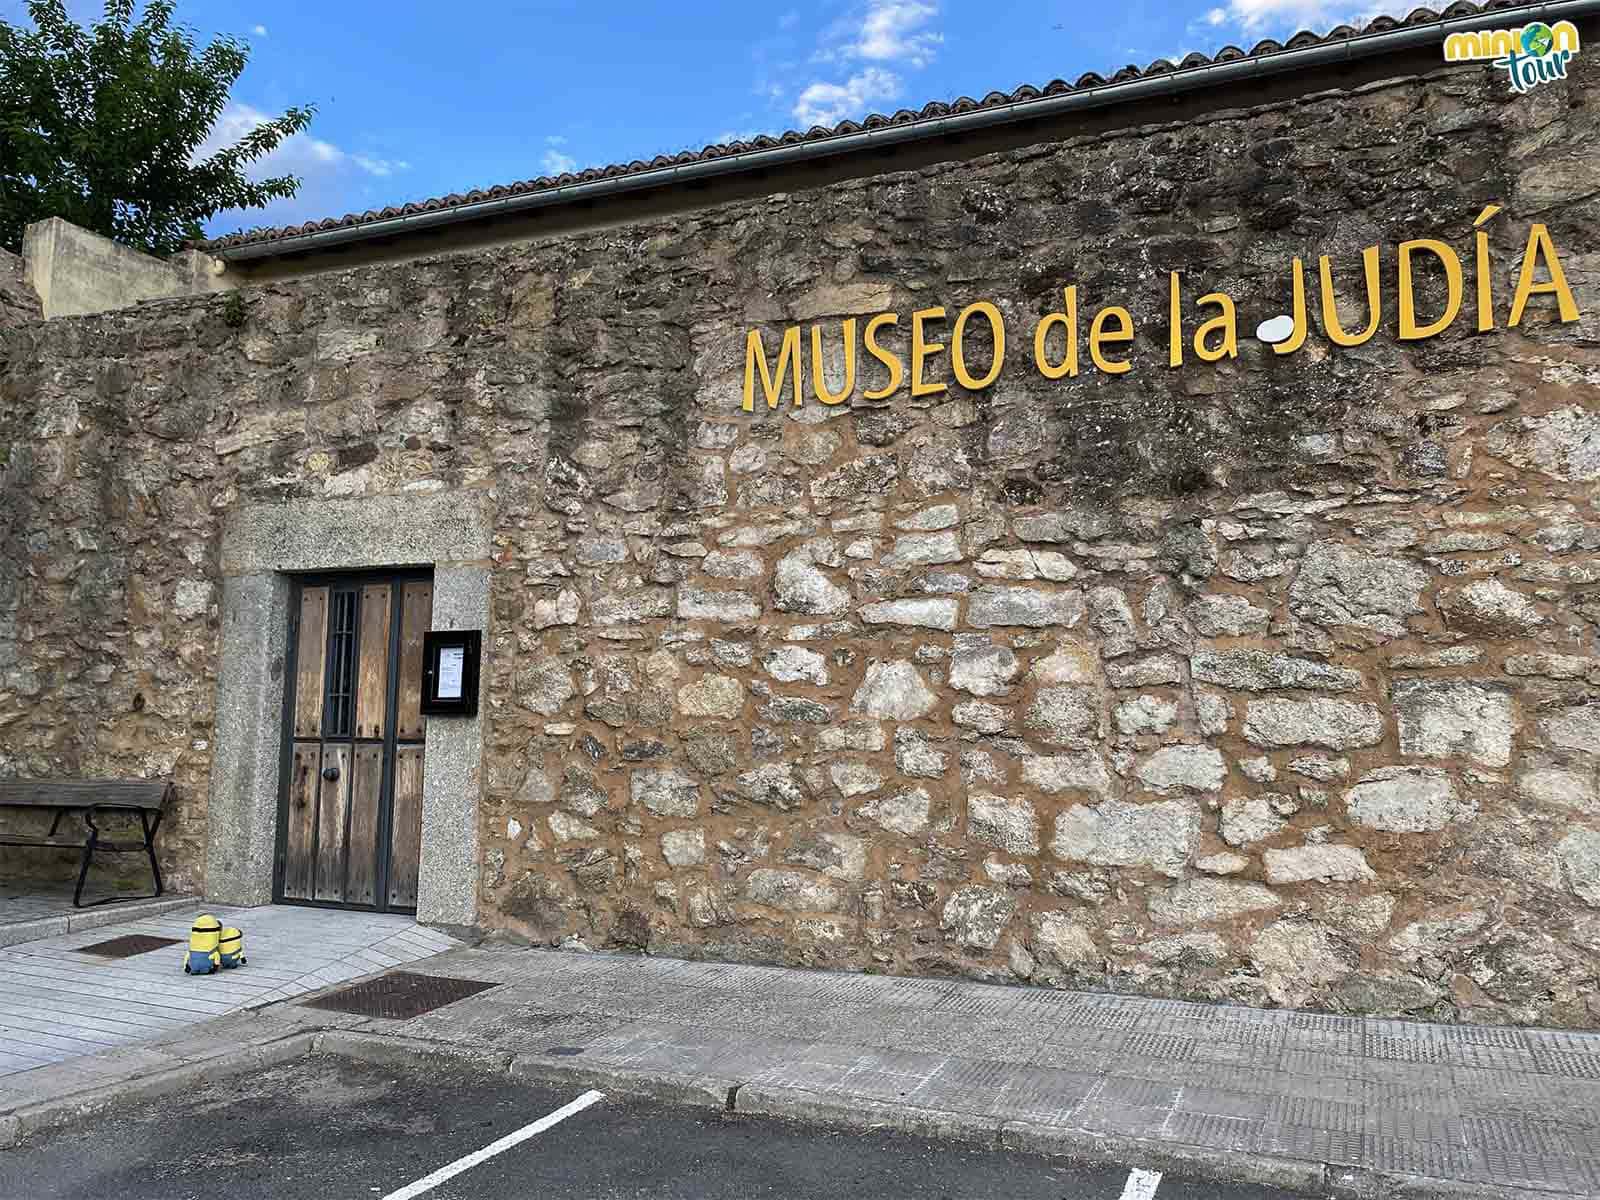 Otro de los planes que puedes hacer en El Barco de Ávila es visitar el Museo de la Judía